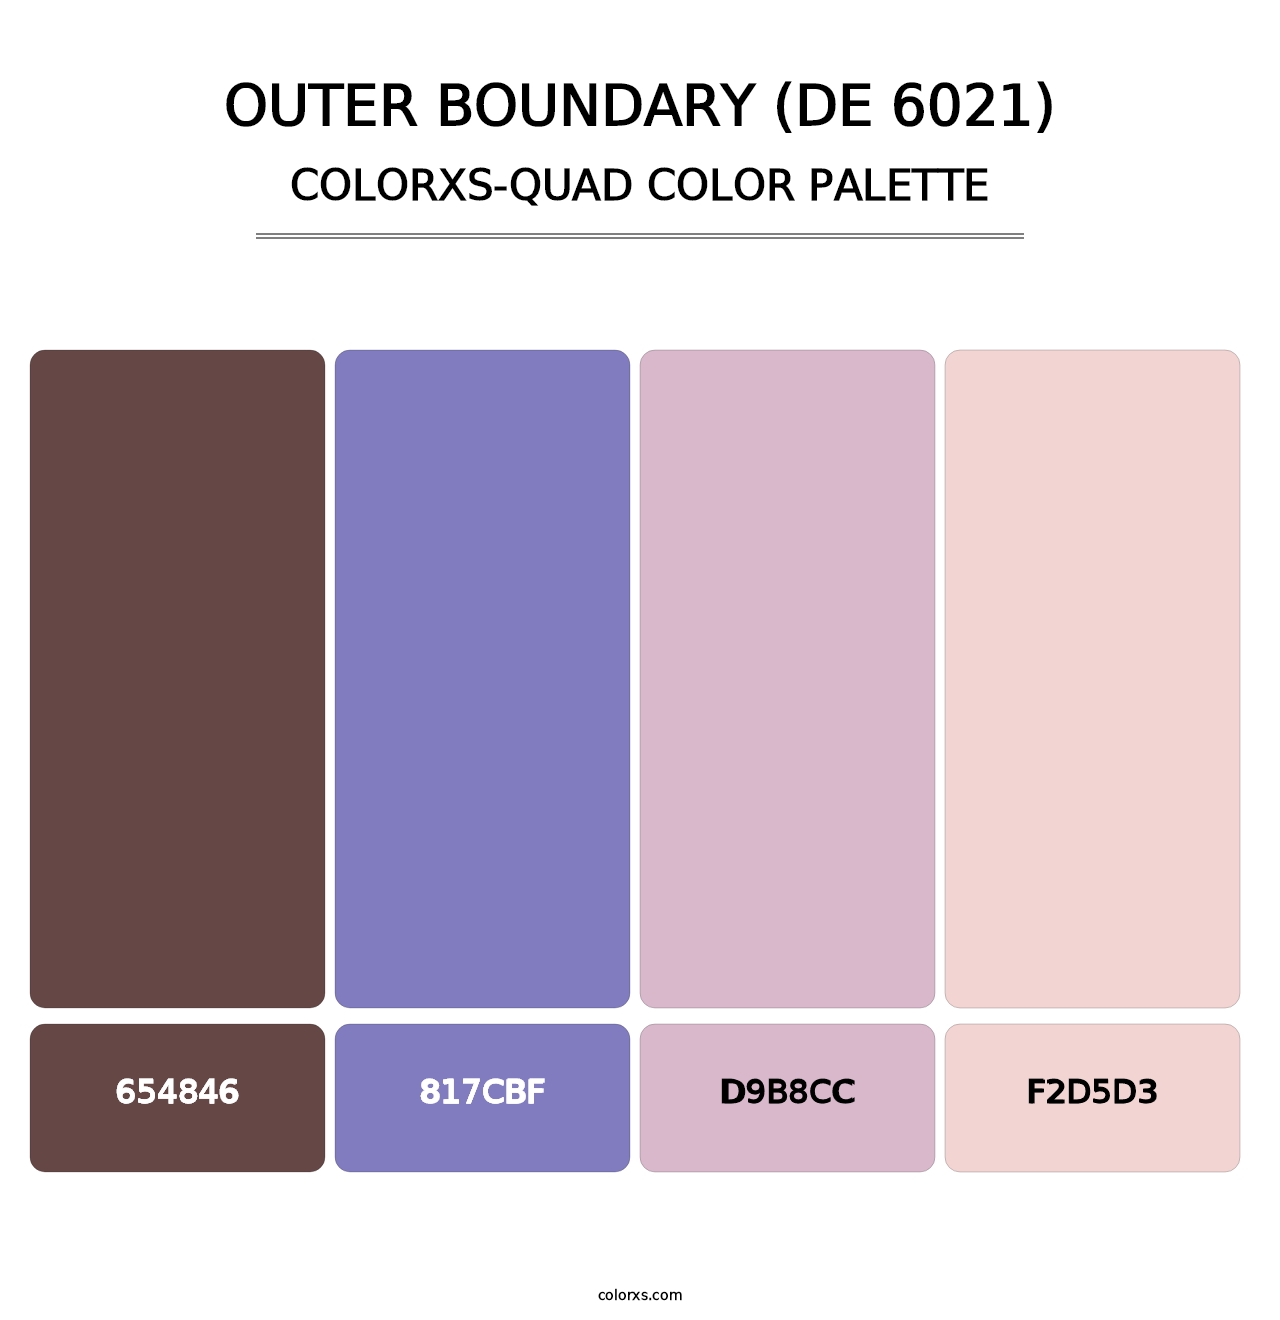 Outer Boundary (DE 6021) - Colorxs Quad Palette